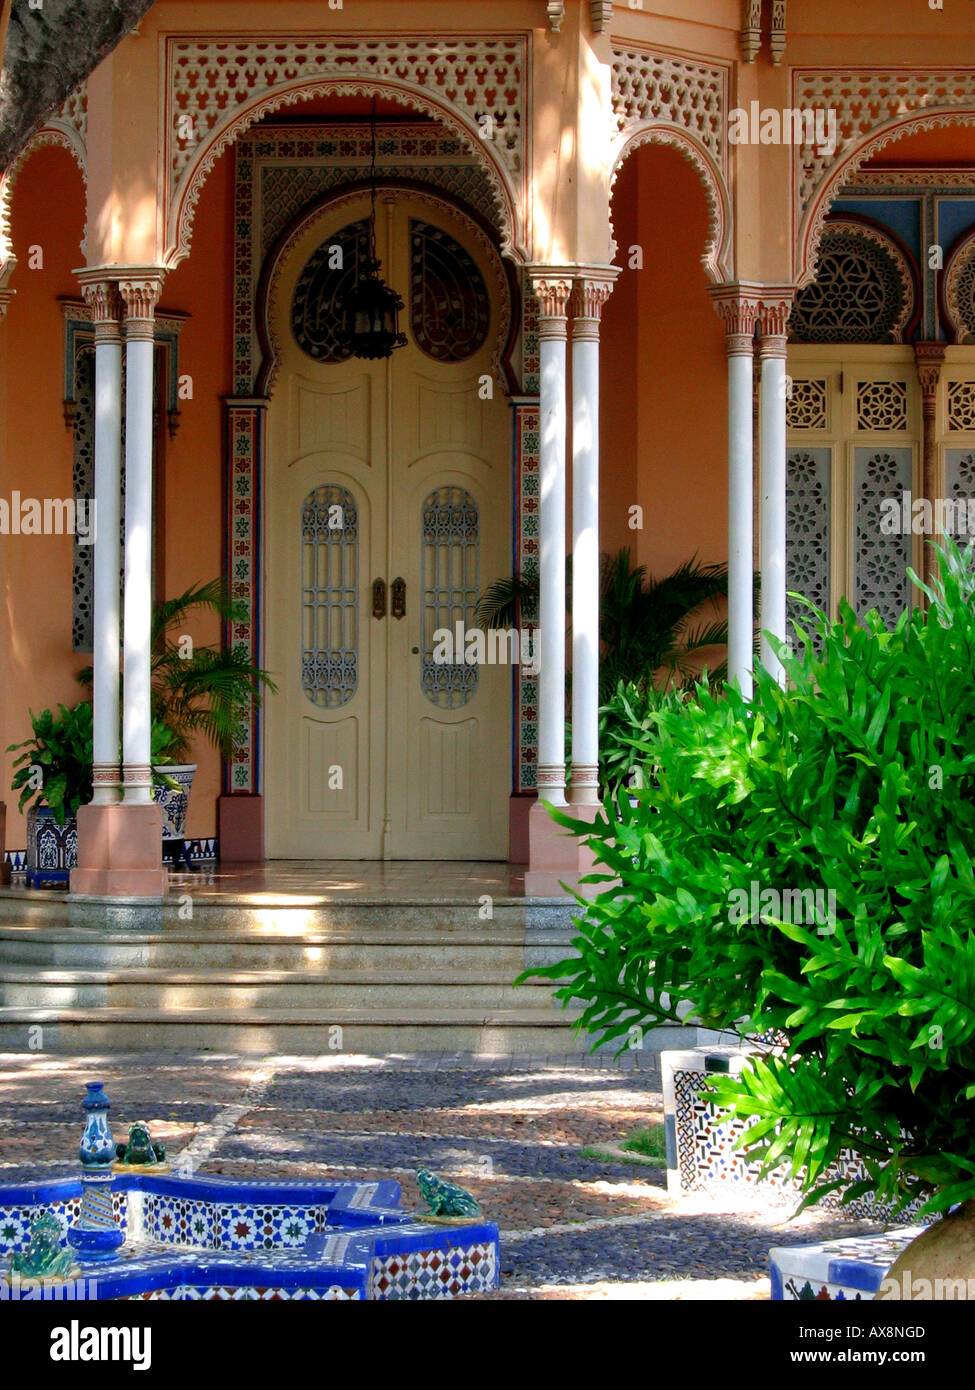 Vue extérieure de la Casa Roman, Cartagena de Indias, Colombie, Amérique du Sud Banque D'Images